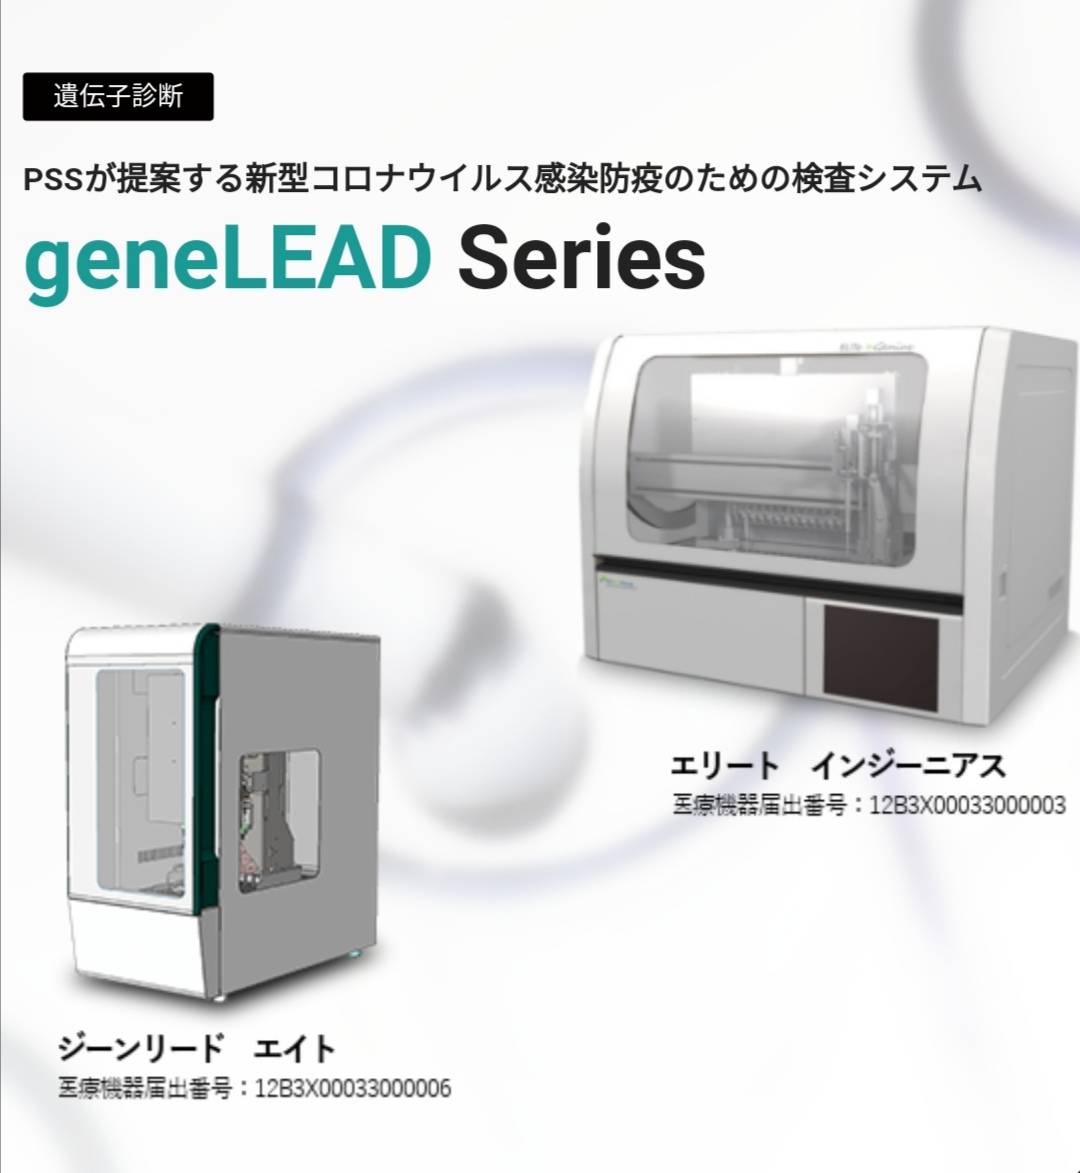 全自動PCR検査装置PSS松戸日本発売